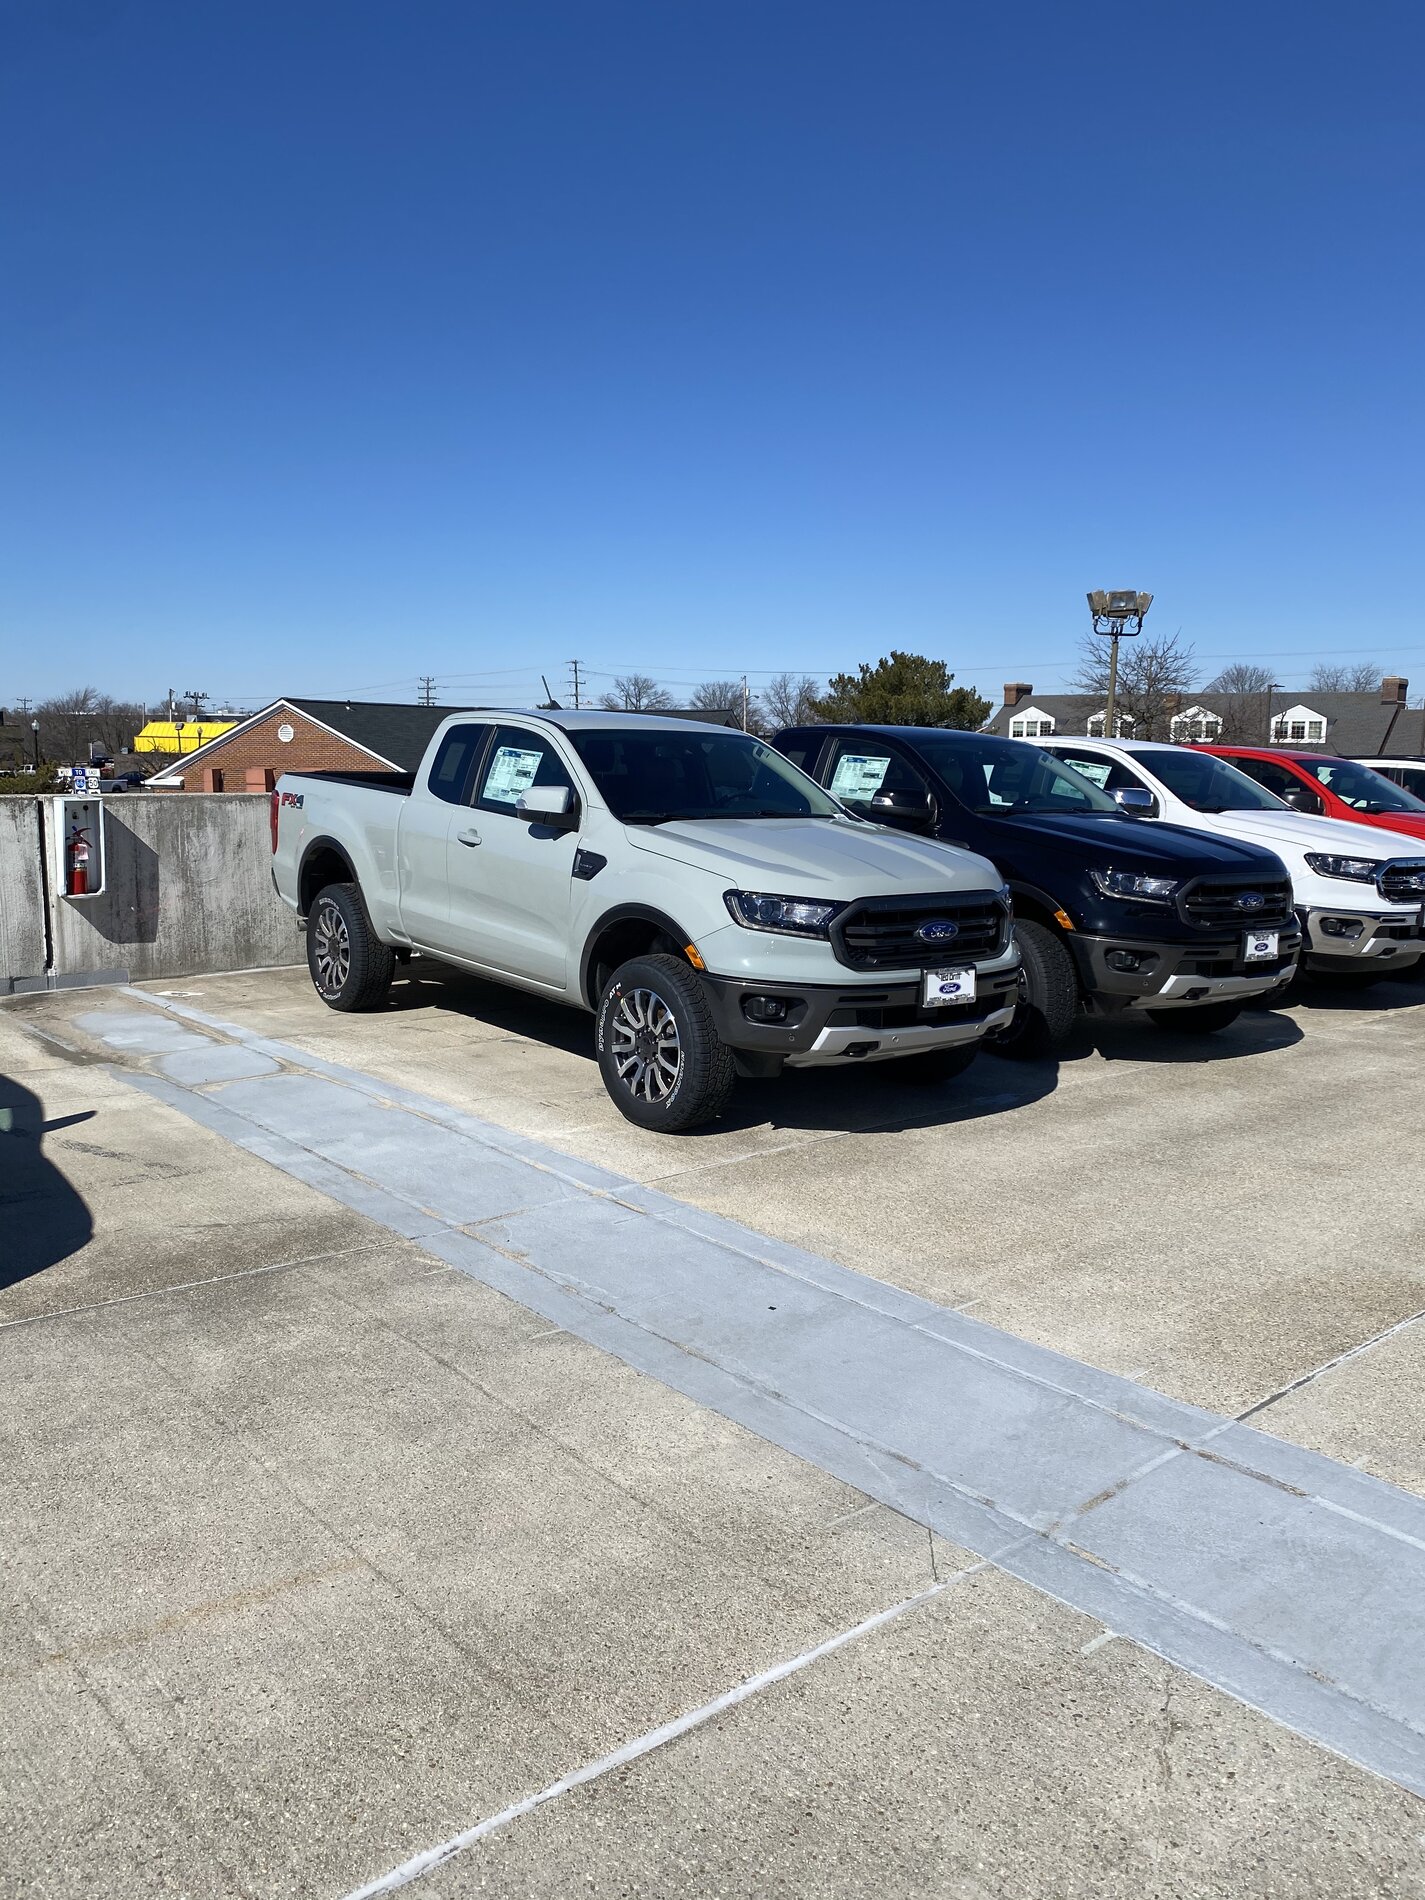 Ford Bronco Cactus Gray Ranger in full sunshine 1614913888895